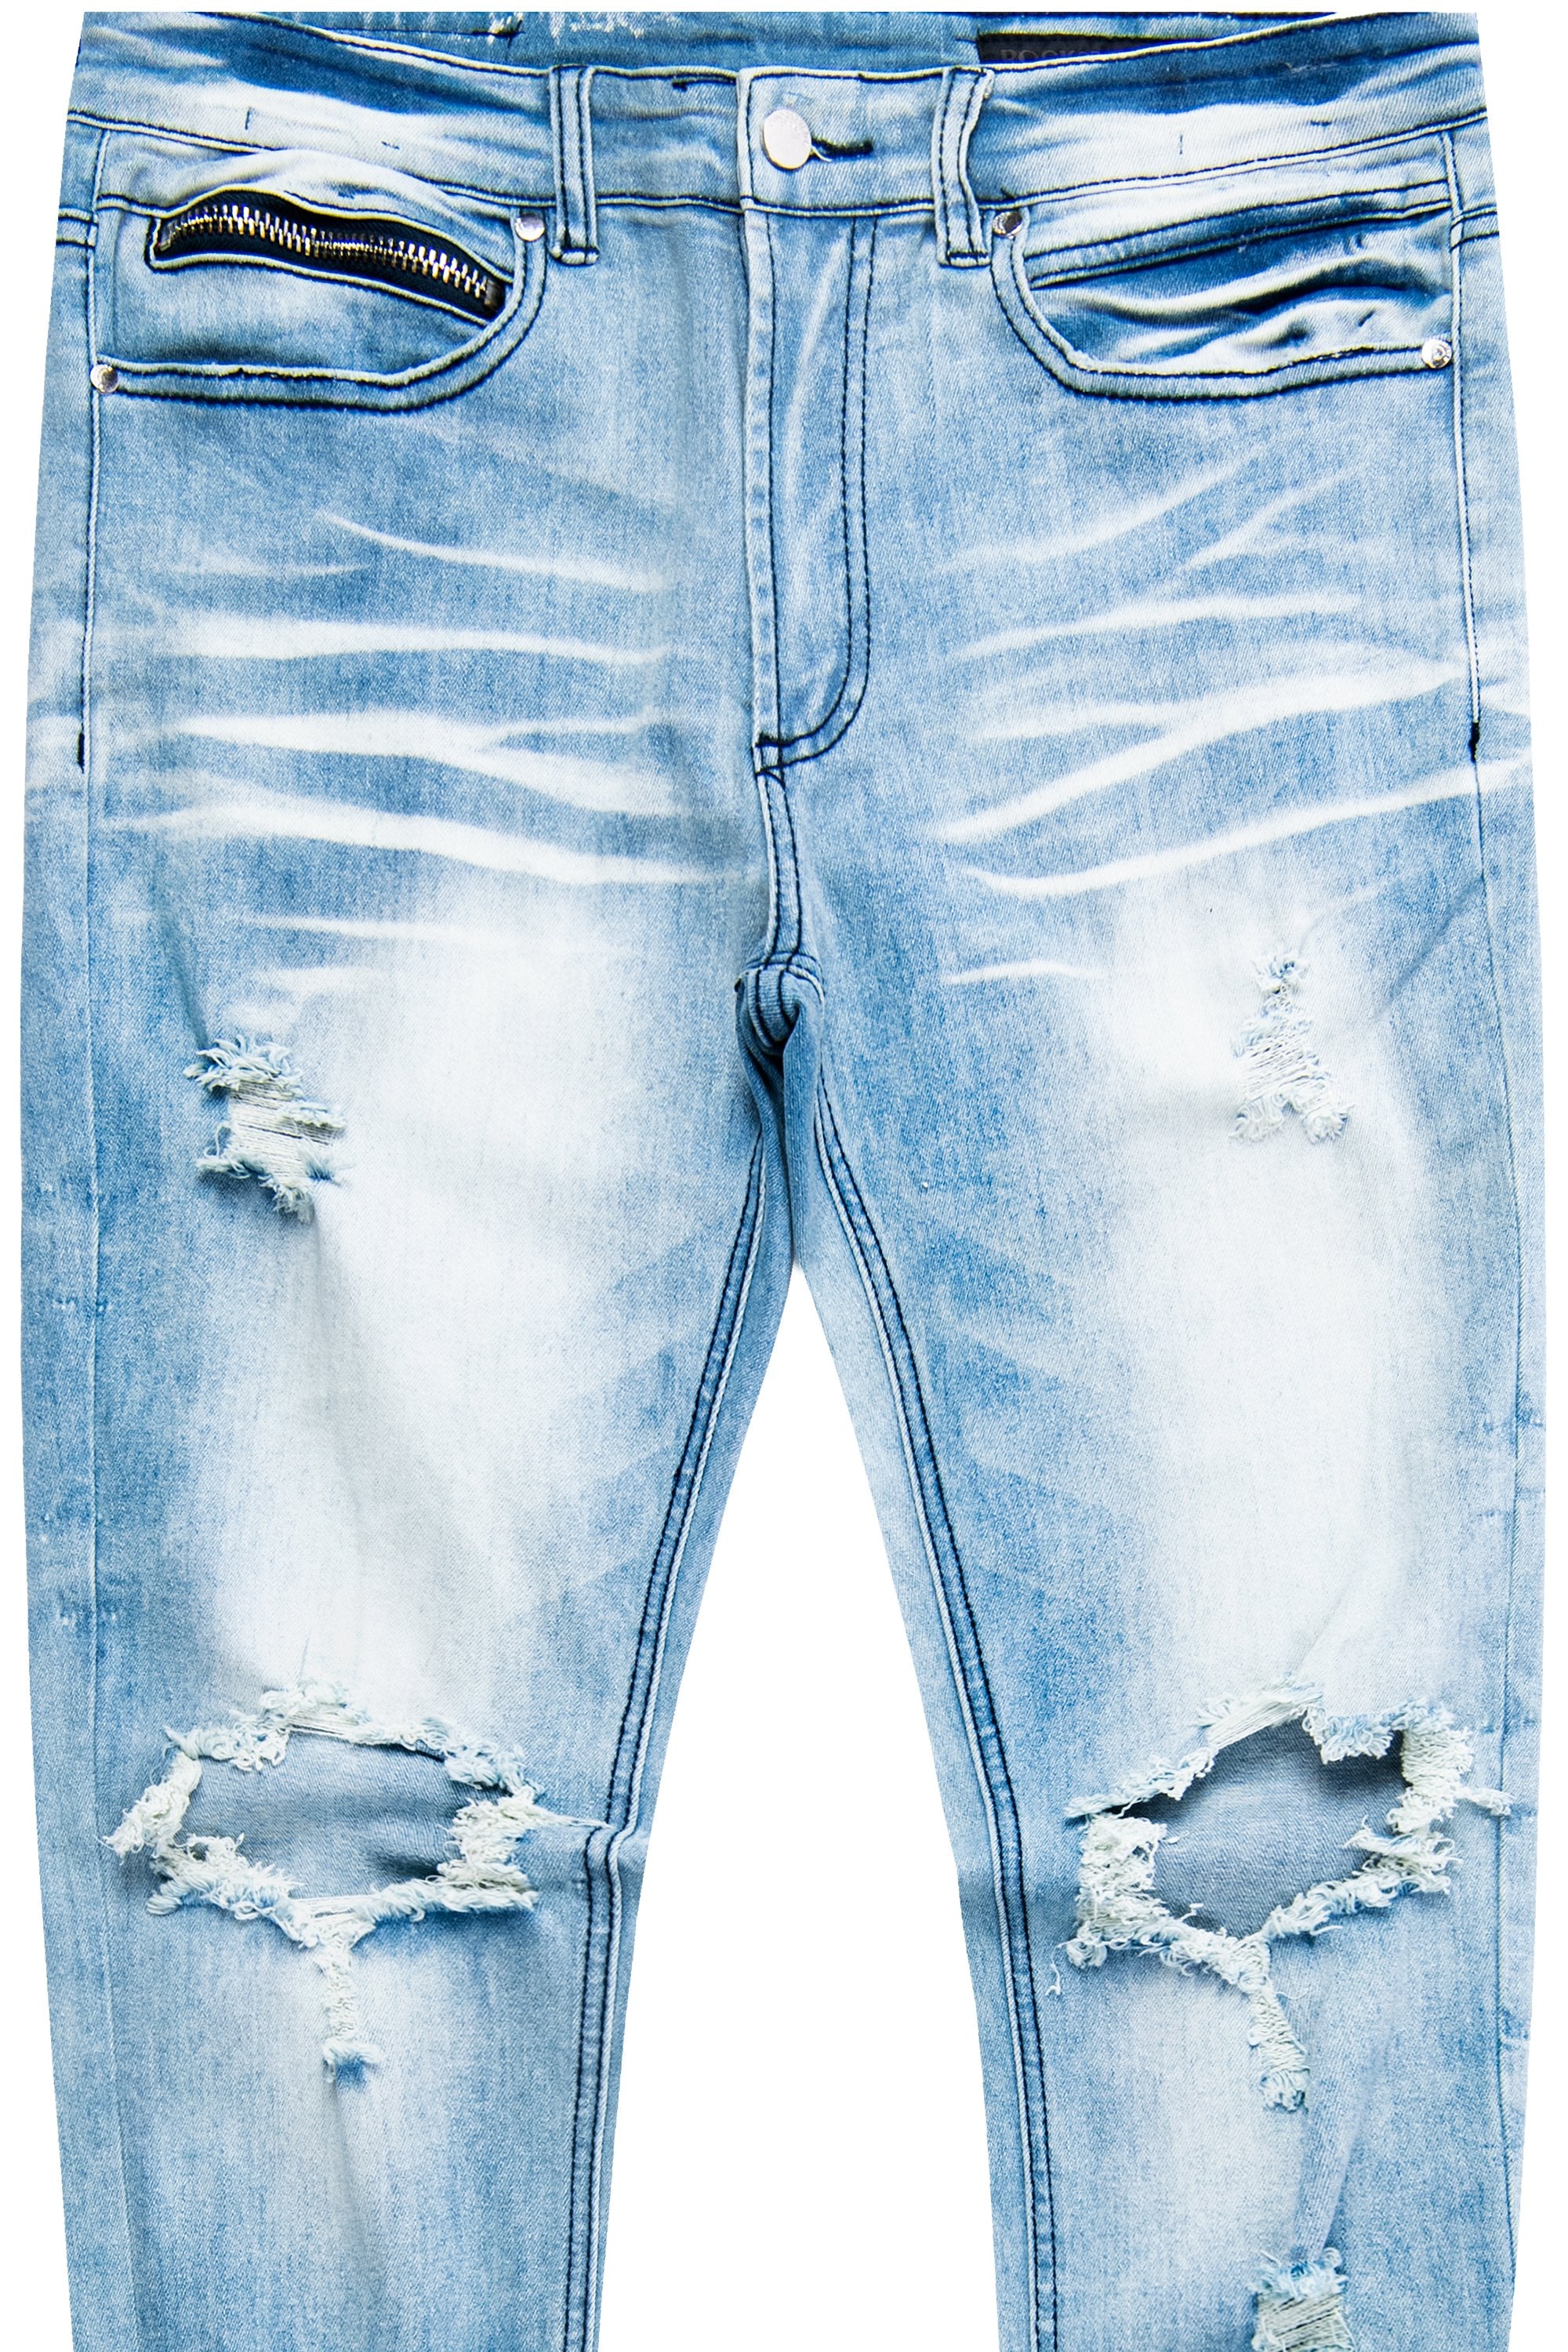 Dag Blue– 5 Rockstar Pocket Jean- Original